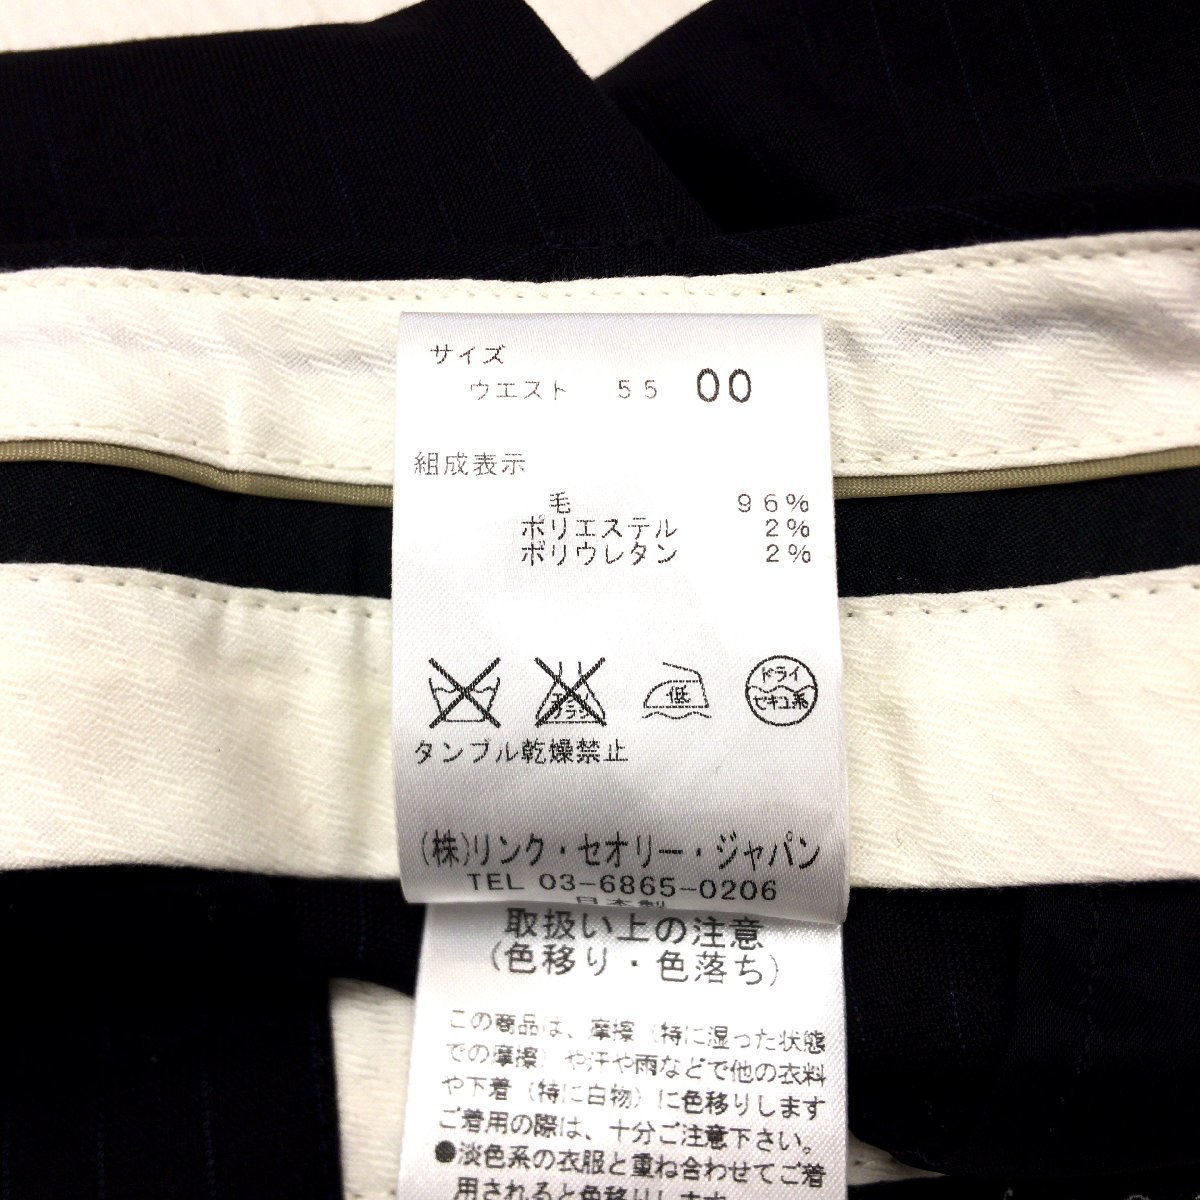 27599円 【SEAL限定商品】 セオリーレディース パンツスーツ ネイビーストライプ